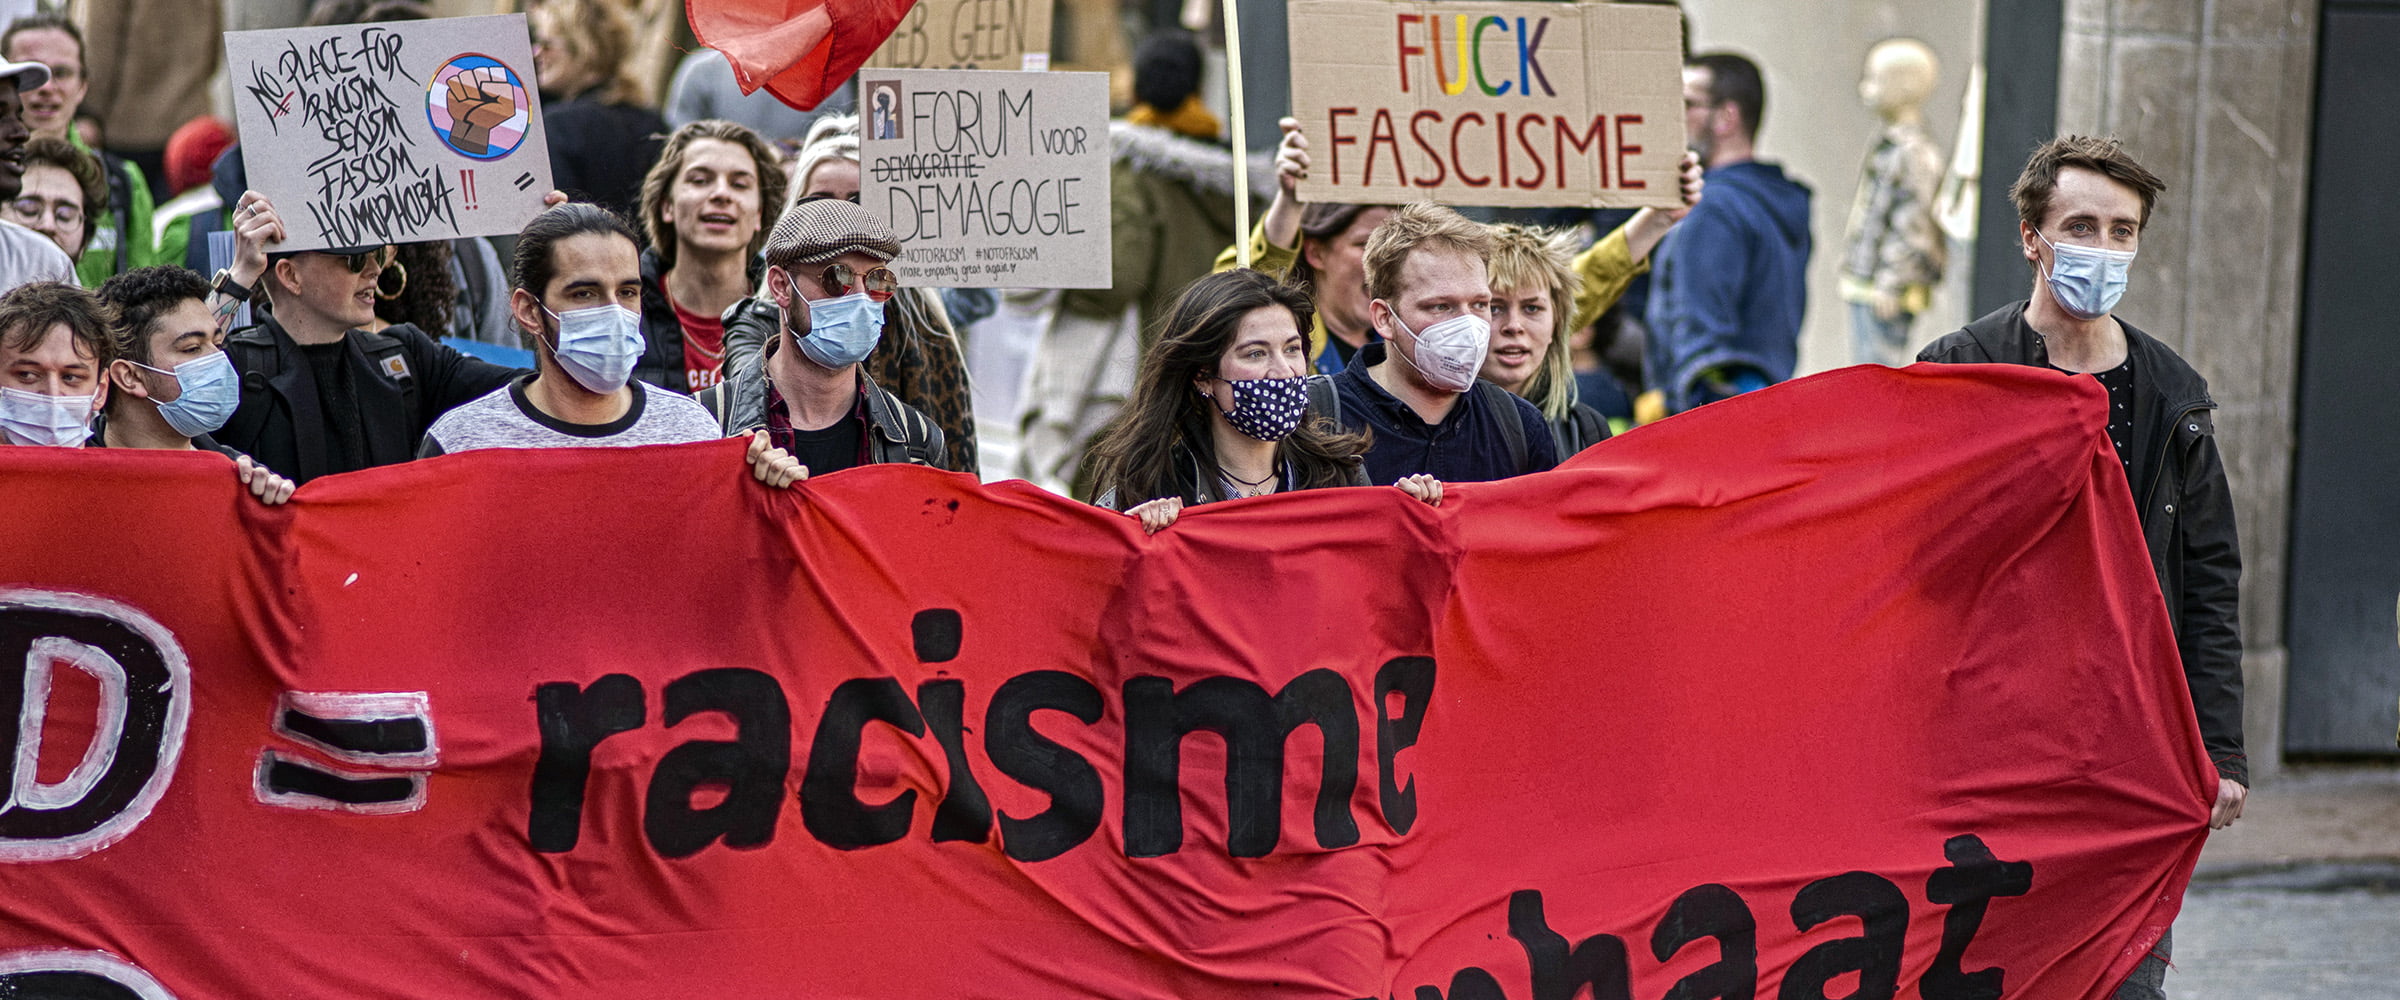 Demonstratie geen racism en fascisme in de raad in Nijmegen